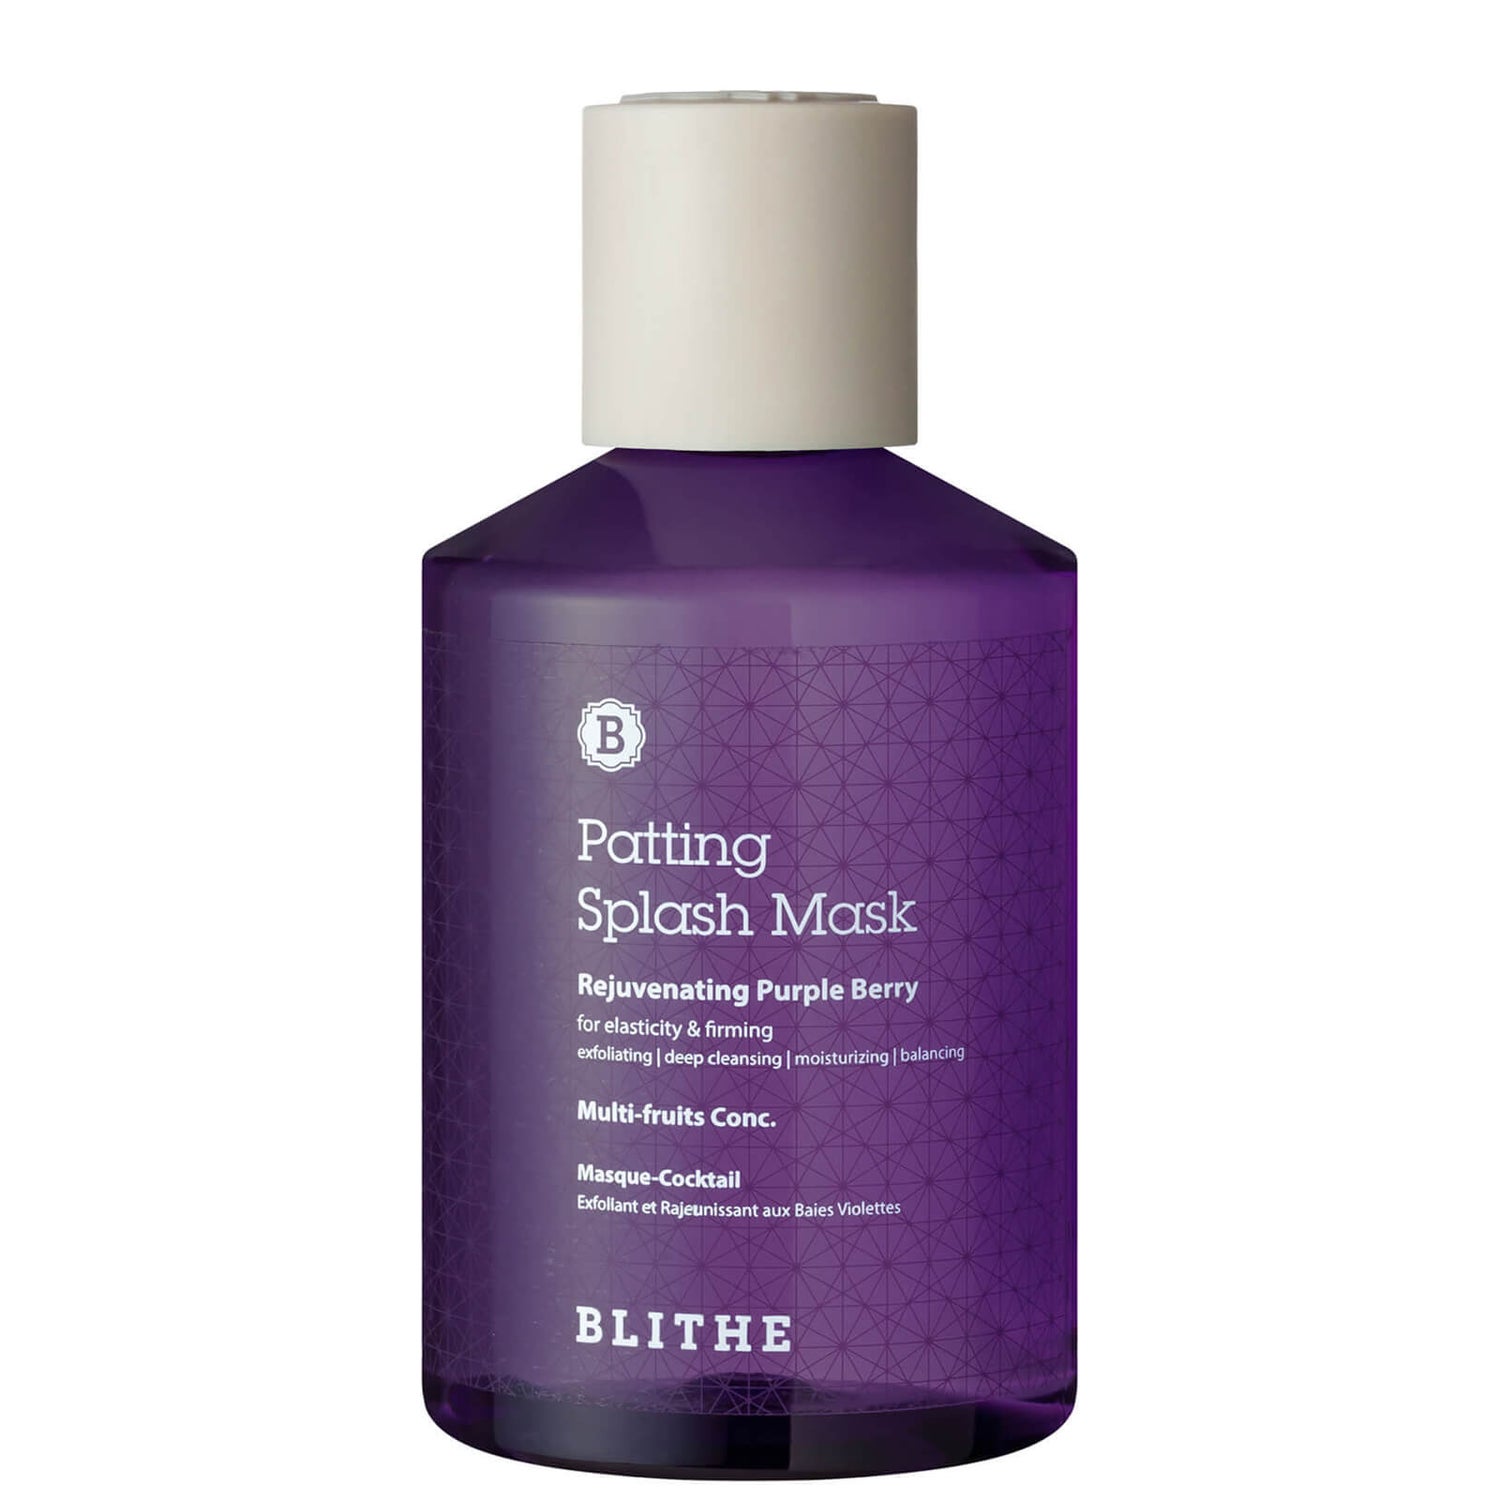 Blithe Rejuvenating Purple Berry Patting Splash Mask 200ml